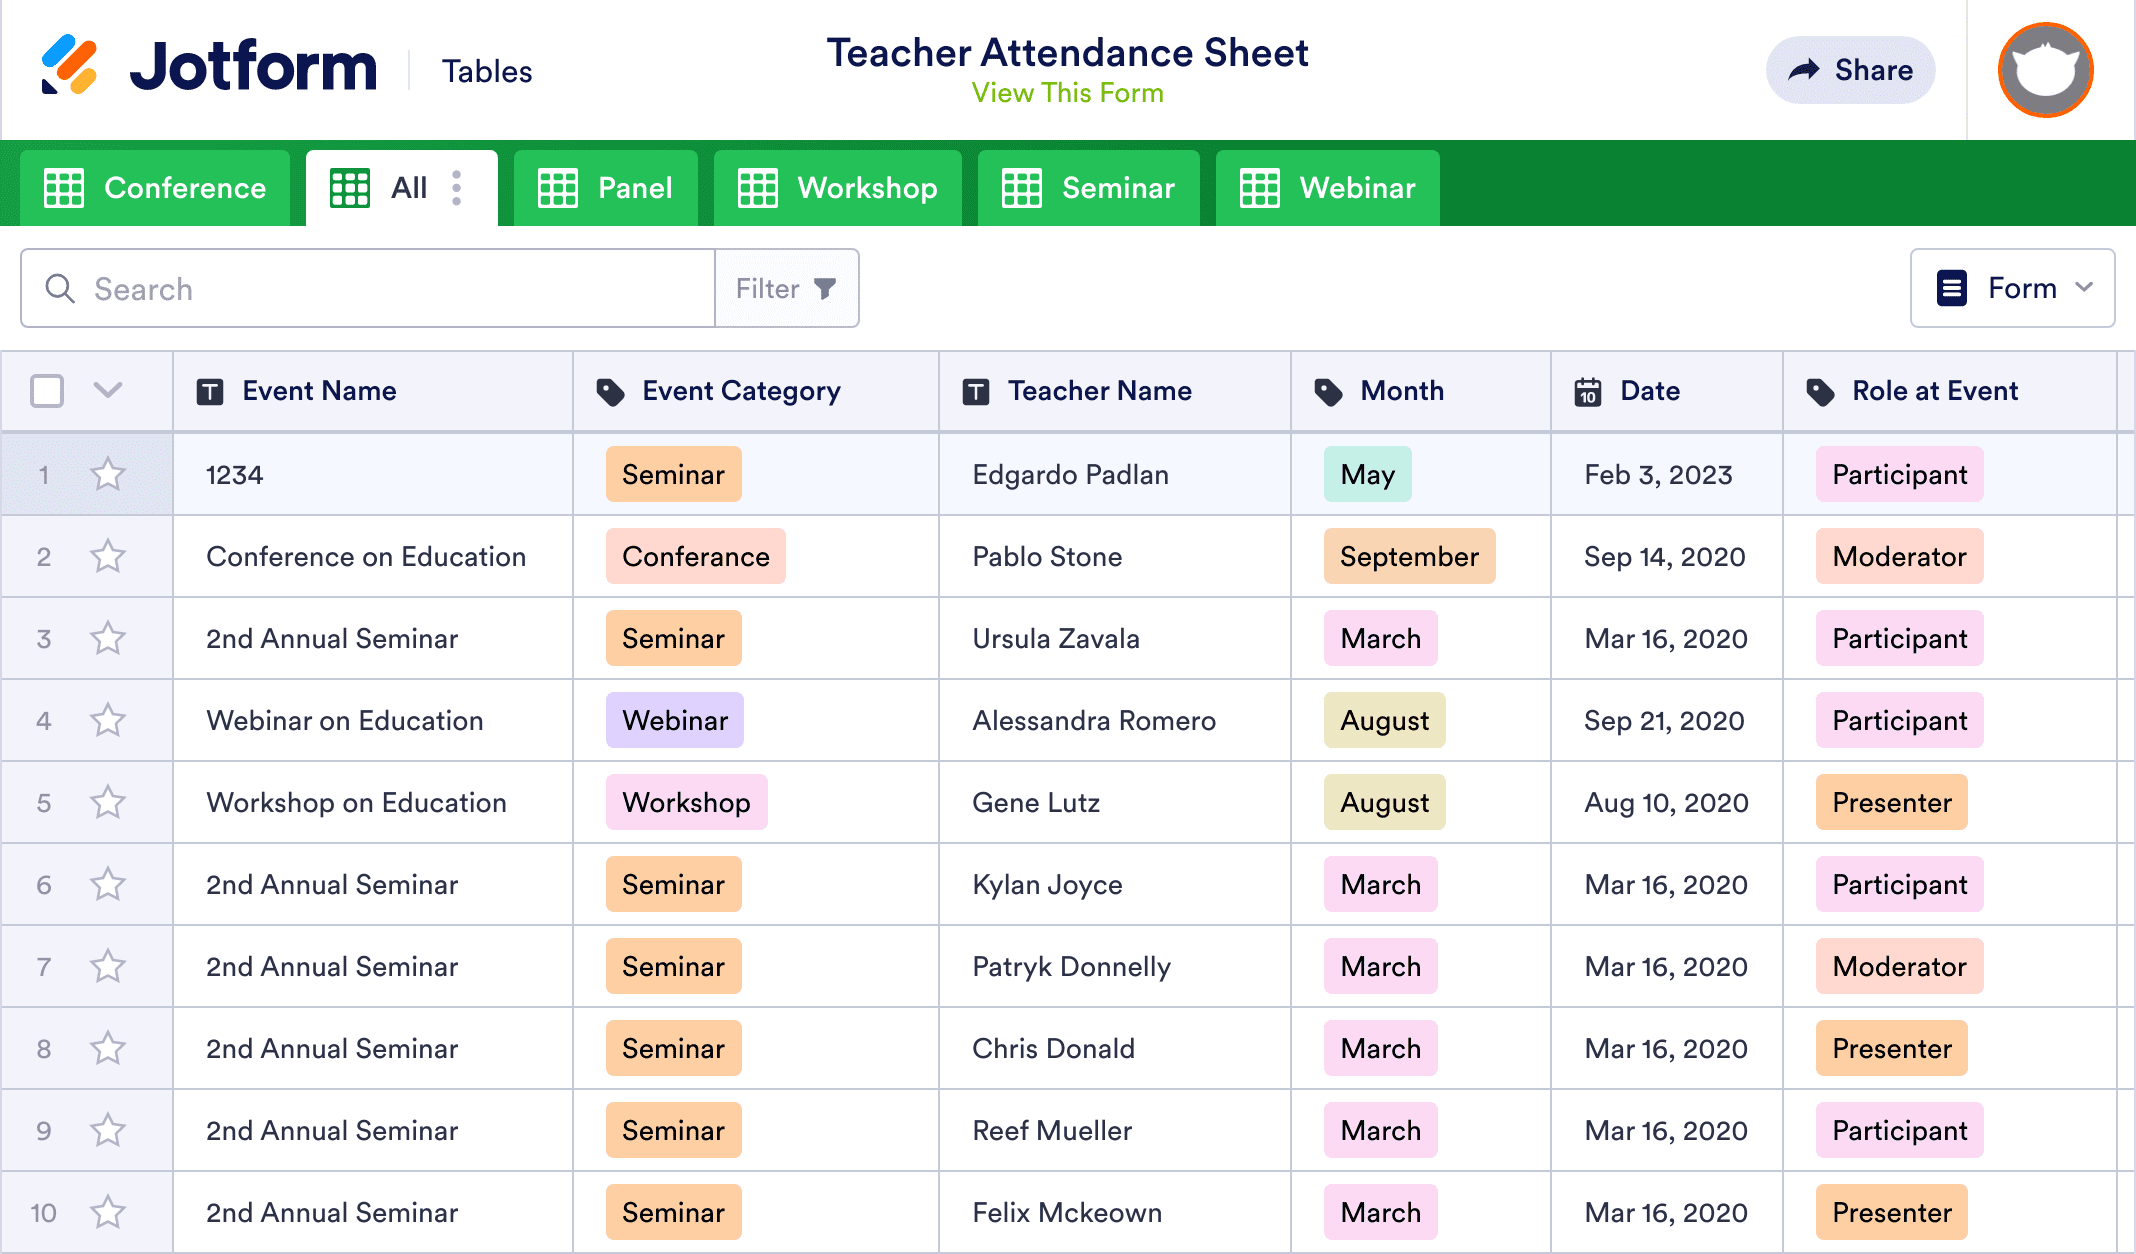 Teacher Attendance Sheet Template | Jotform Tables